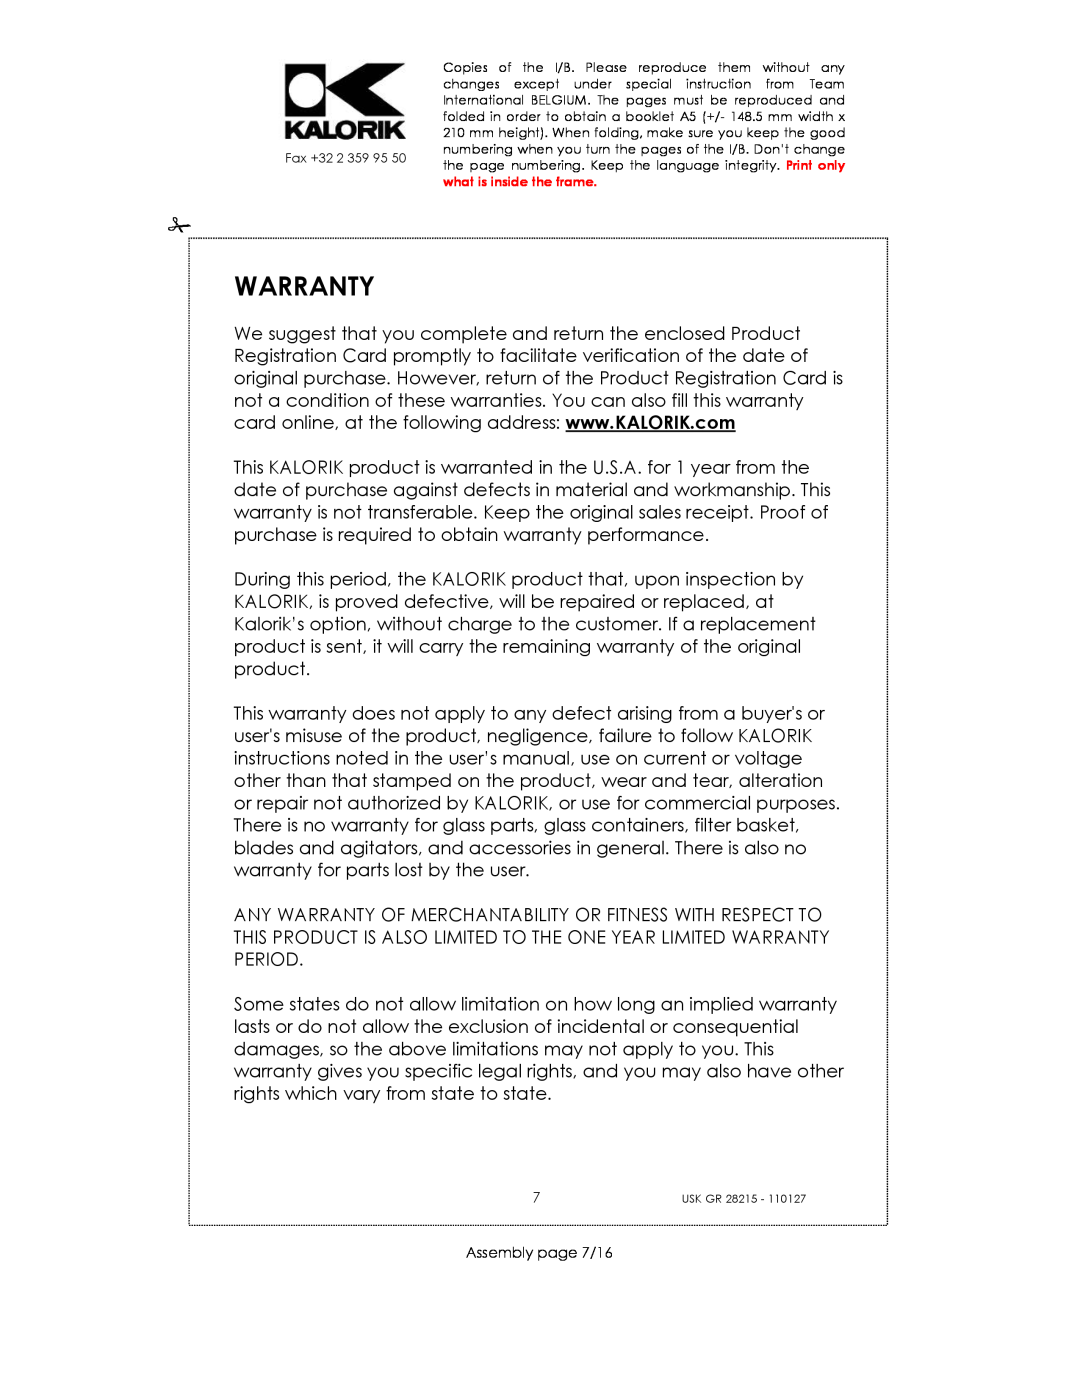 Kalorik USK GR 28215 manual Warranty, Assembly page 7/16 